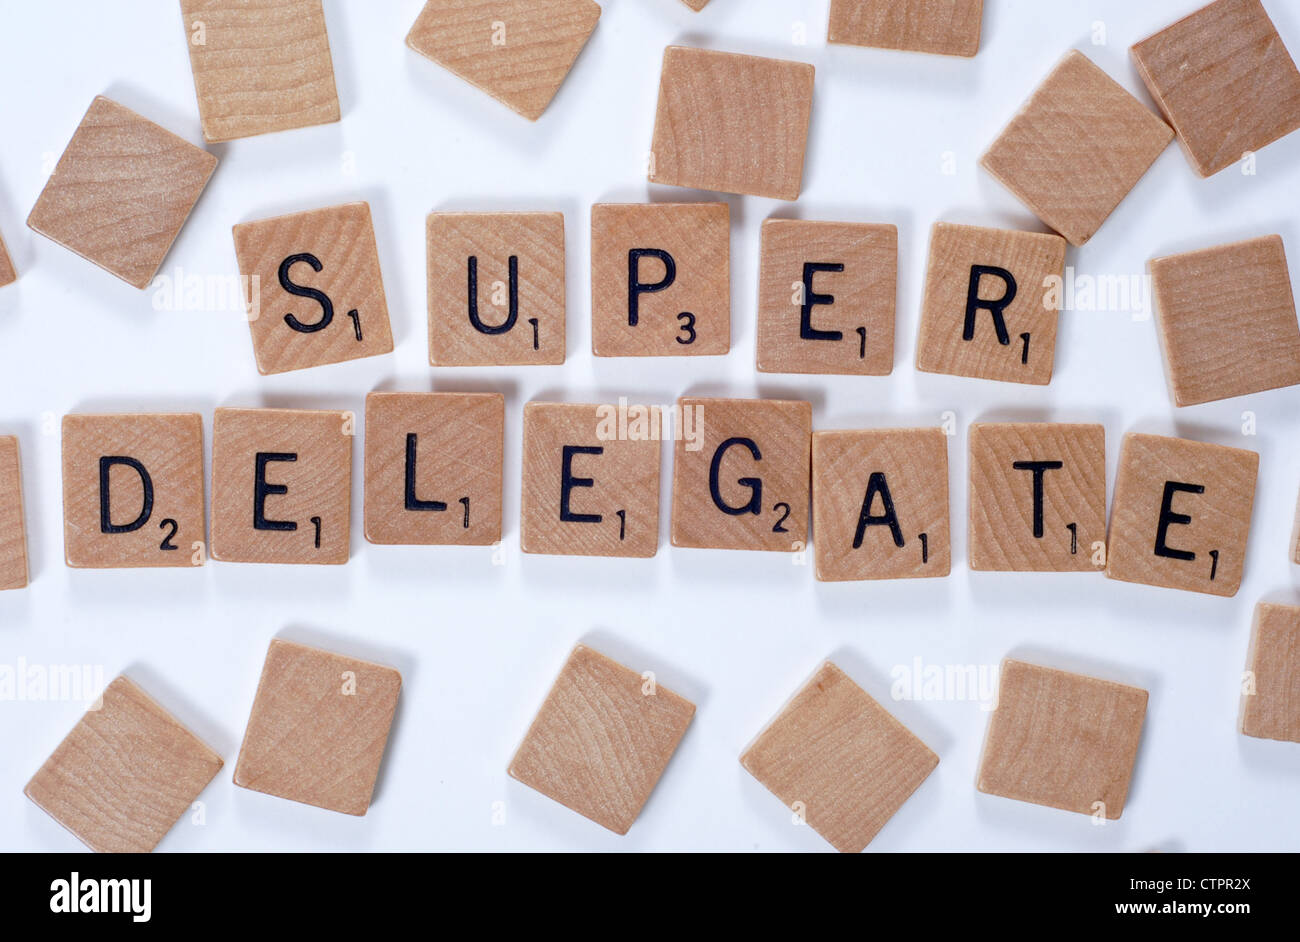 Neues Wort aus einem Wörterbuch: Superdelegate, ausgeschrieben mit Holzfliesen Stockfoto